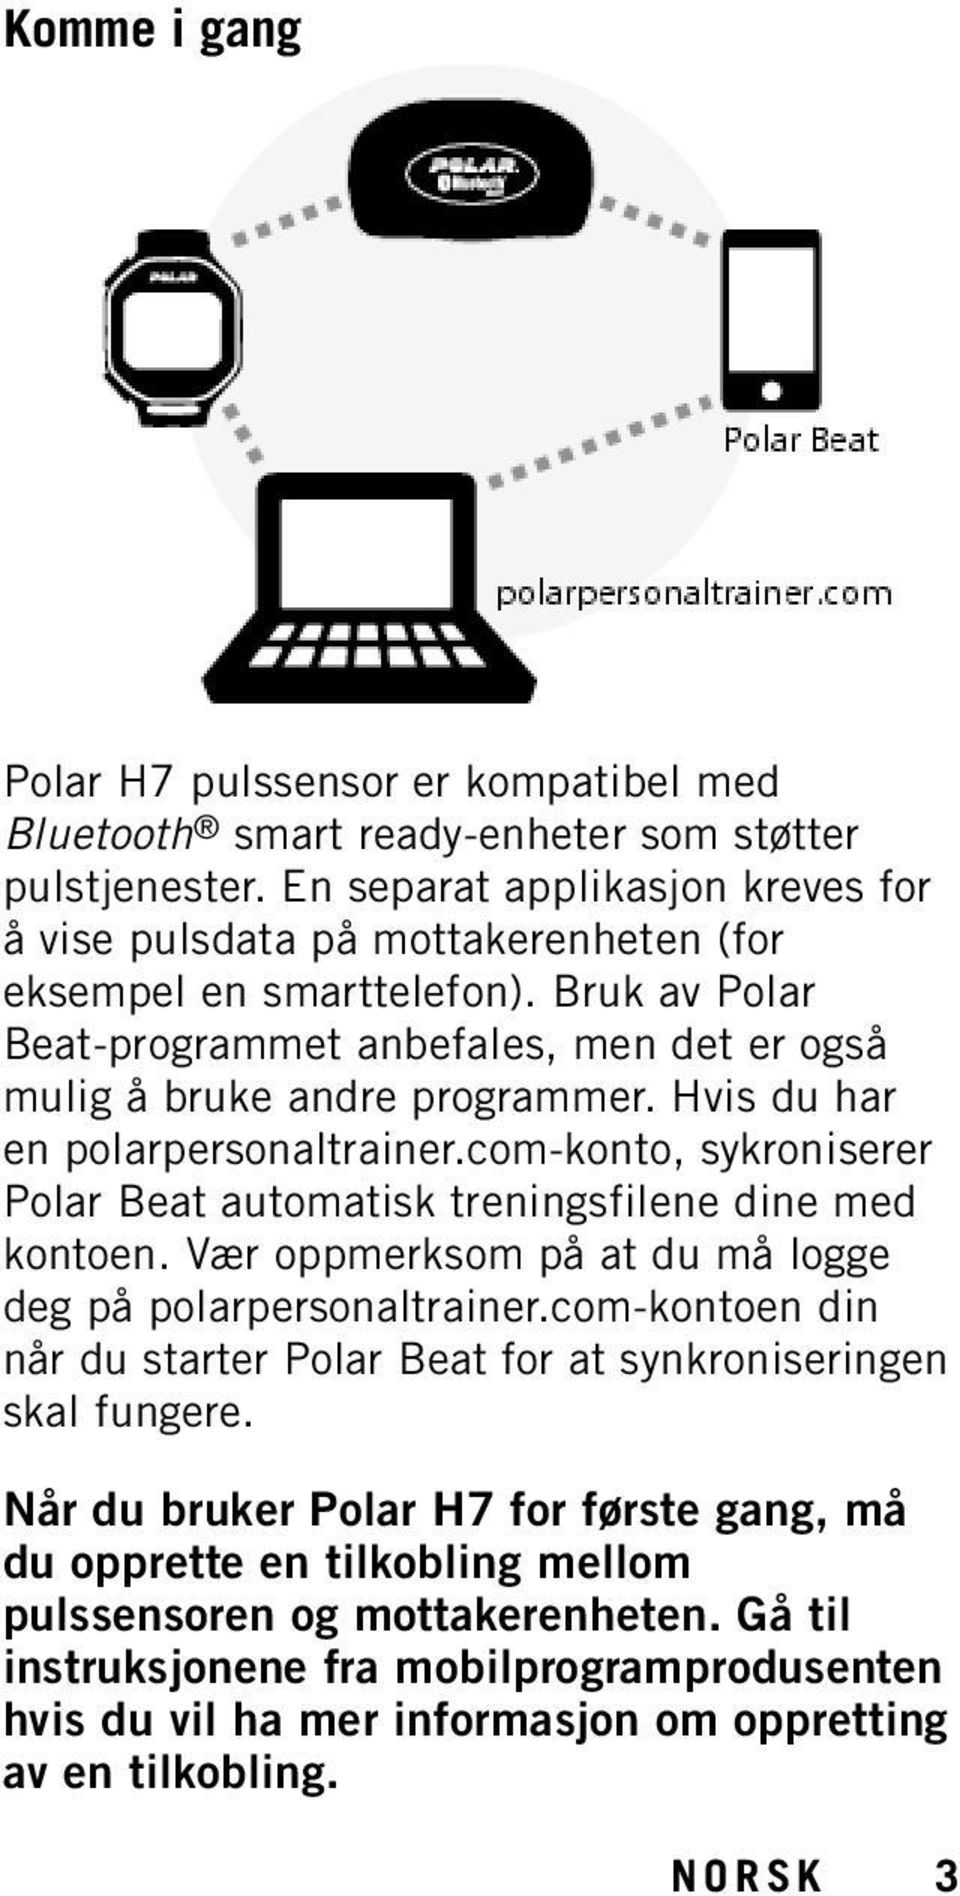 Hvis du har en polarpersonaltrainer.com-konto, sykroniserer Polar Beat automatisk treningsfilene dine med kontoen. Vær oppmerksom på at du må logge deg på polarpersonaltrainer.